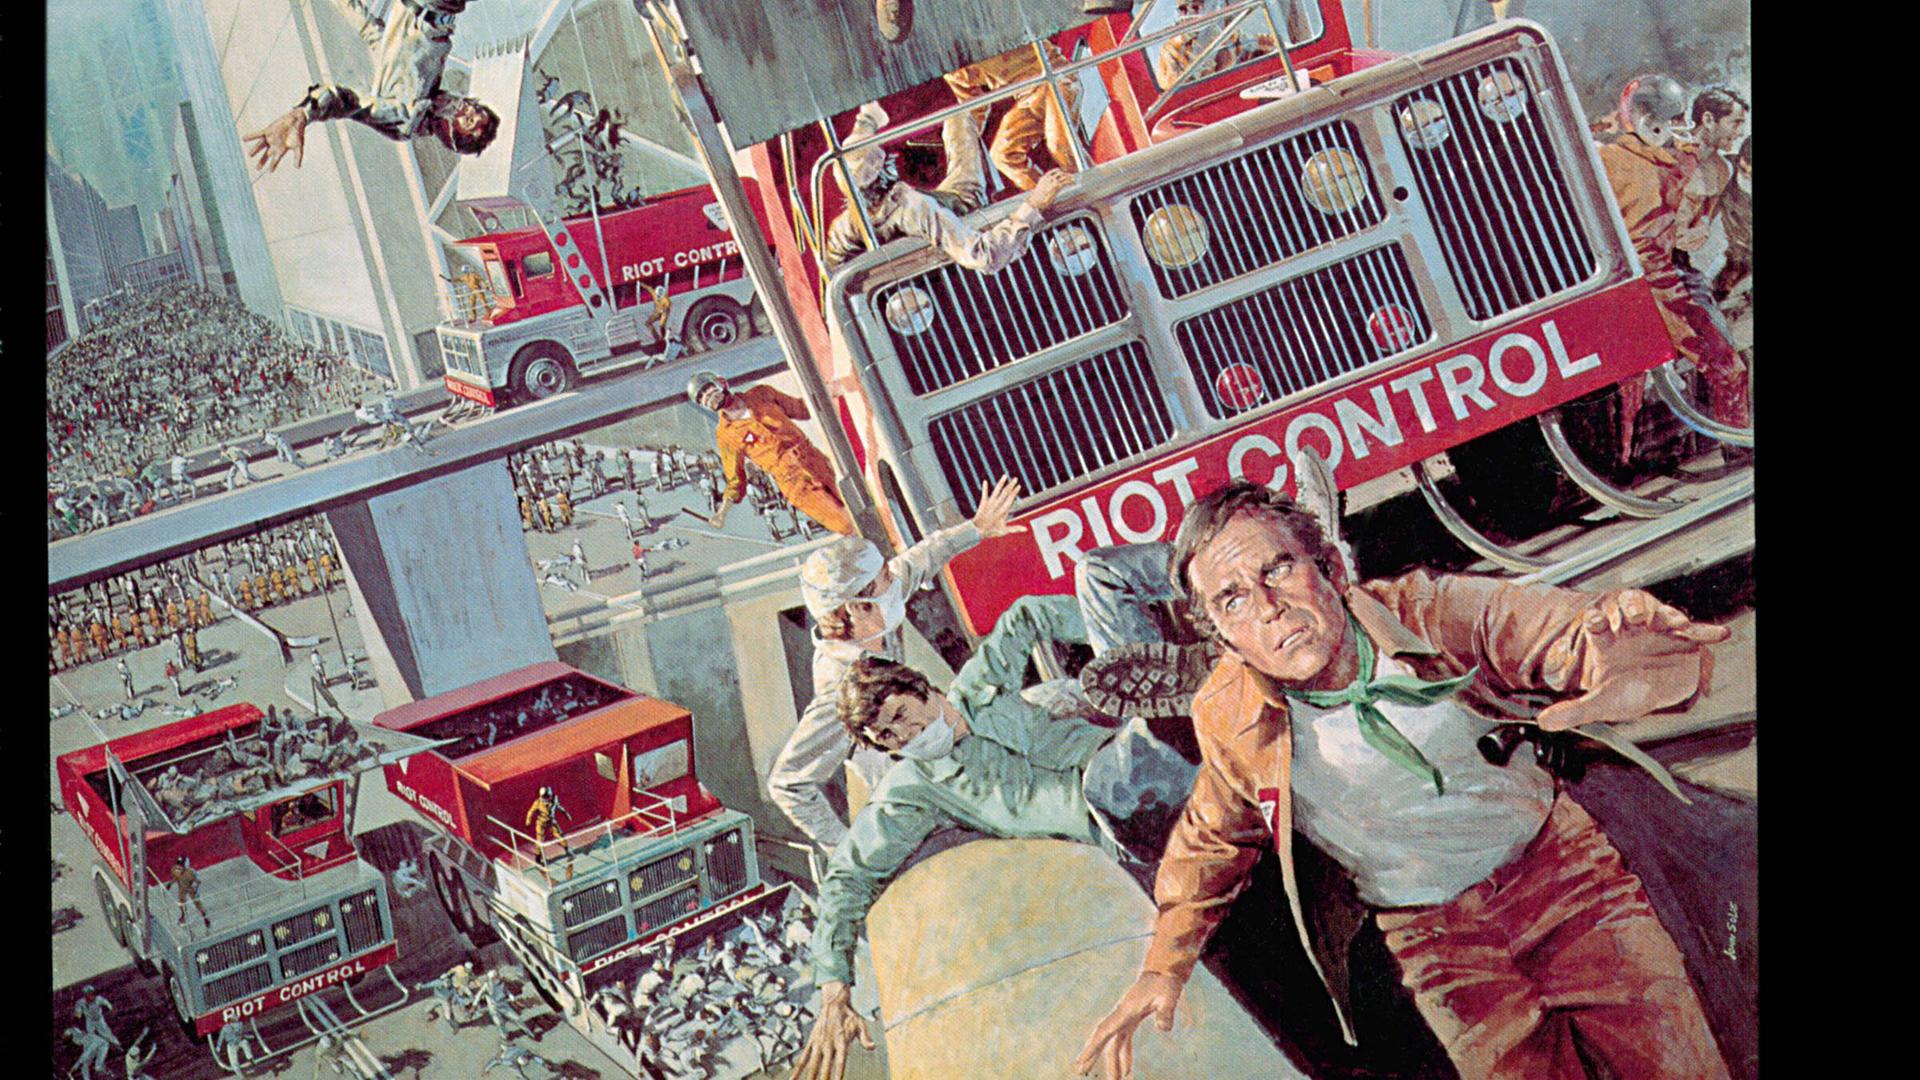 Filmplakat zu "Soylent Green": Menschen fliehen aus einer Stadt im Chaos. Im hintergrund eine Art Fleischwolf, in den Menschenkörper gefüllt werden.